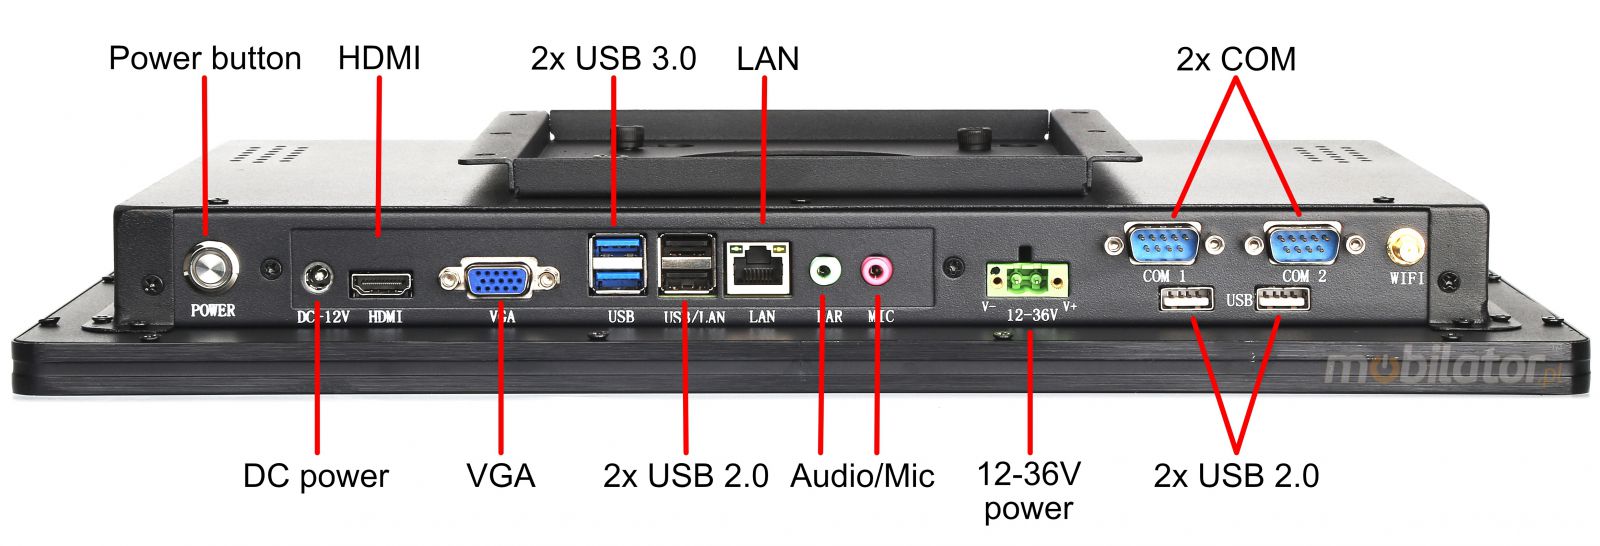 BIBOX-215PC2 zcza: 2x USB 3.0 | 2x USB 2.0 | 2x COM | 2x LAN 1x VGA | 1x HDMI  | DC 12V